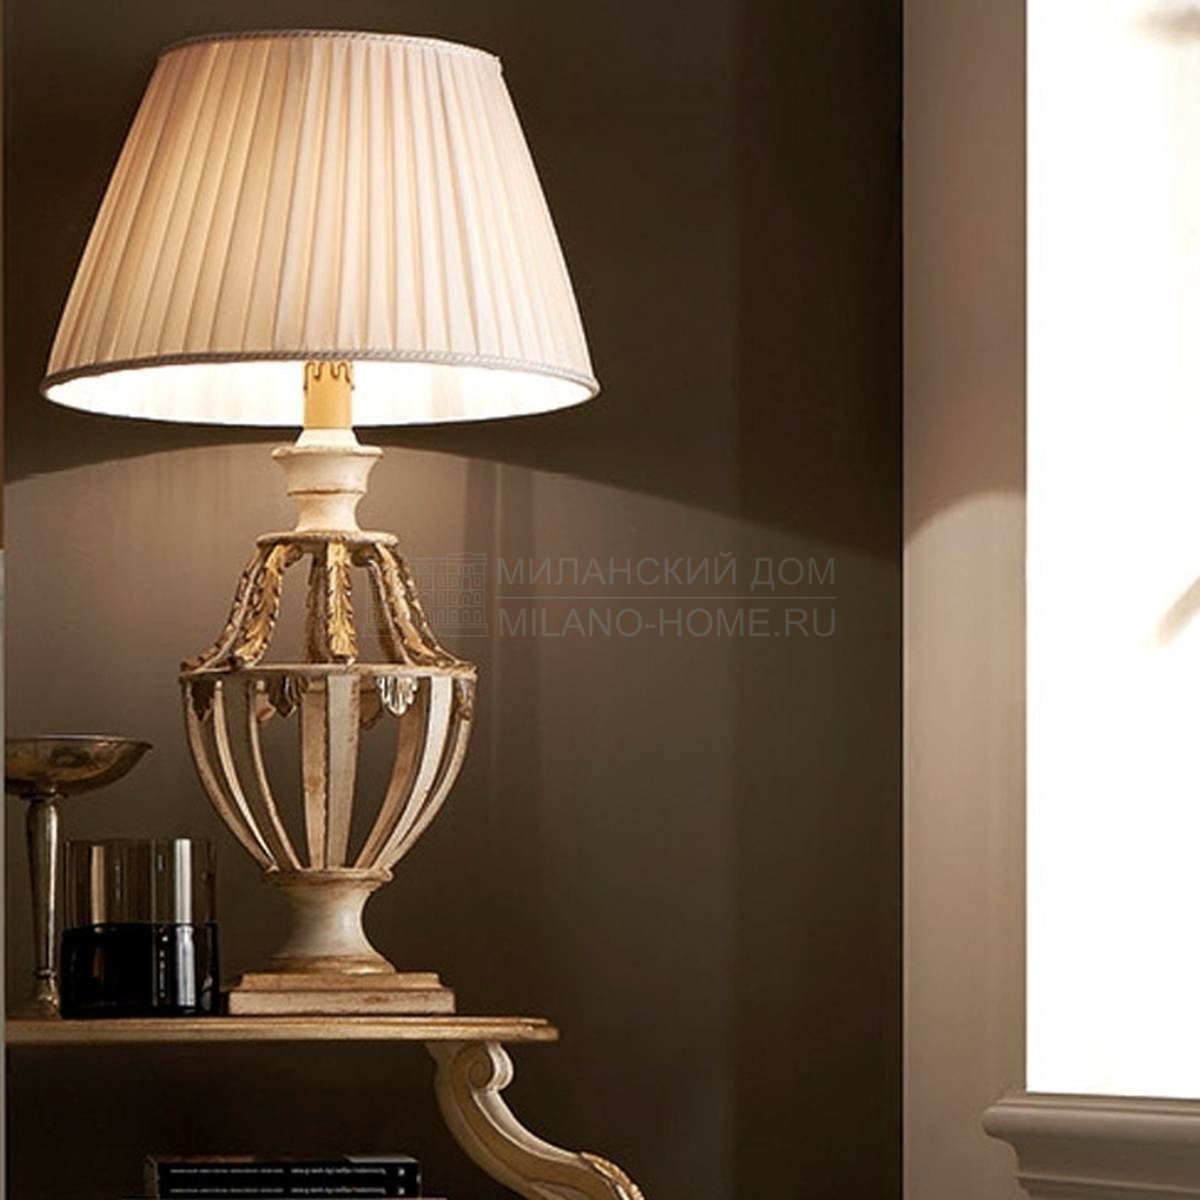 Настольная лампа Lamp 1731 из Италии фабрики SILVANO GRIFONI